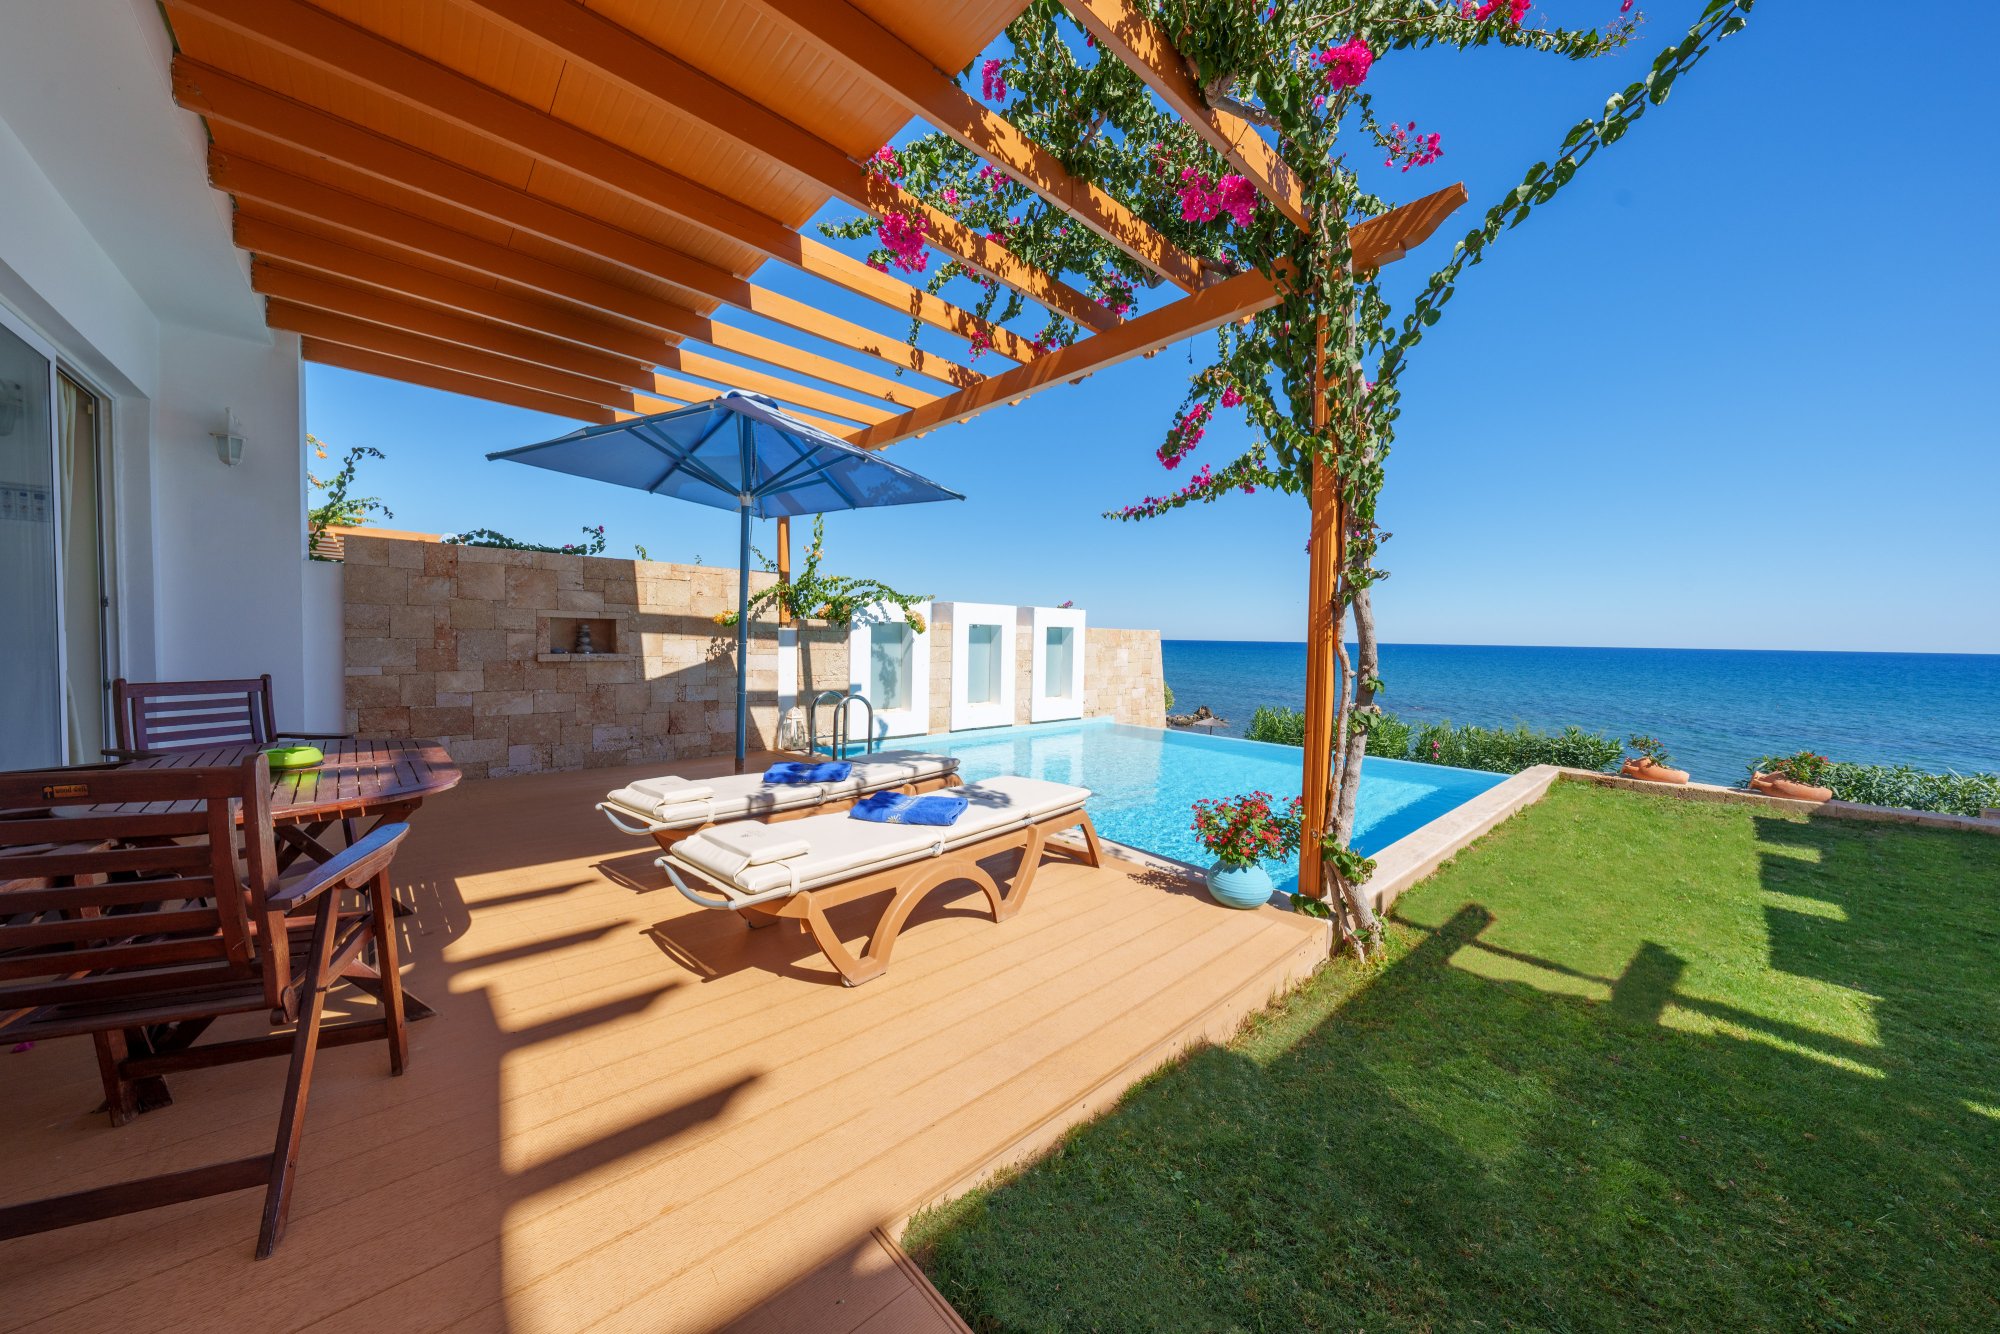 Ambassador Beach Villa mit Meerblick und eigenem Pool - 2 Schlafzimmer (170 qm)_A1S2966.jpg